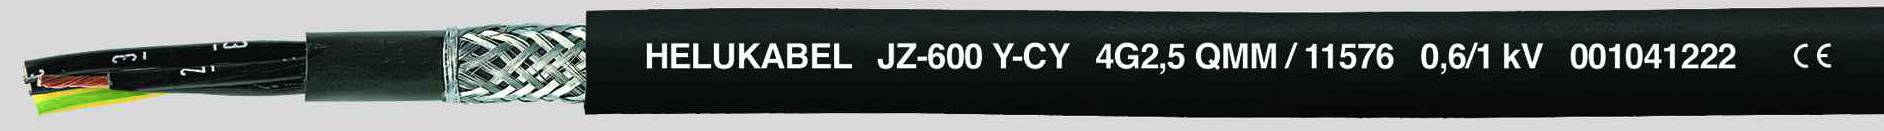 HELUKABEL JZ-600-Y-CY Steuerleitung 4 G 1.50 mm² Schwarz 11548-500 500 m